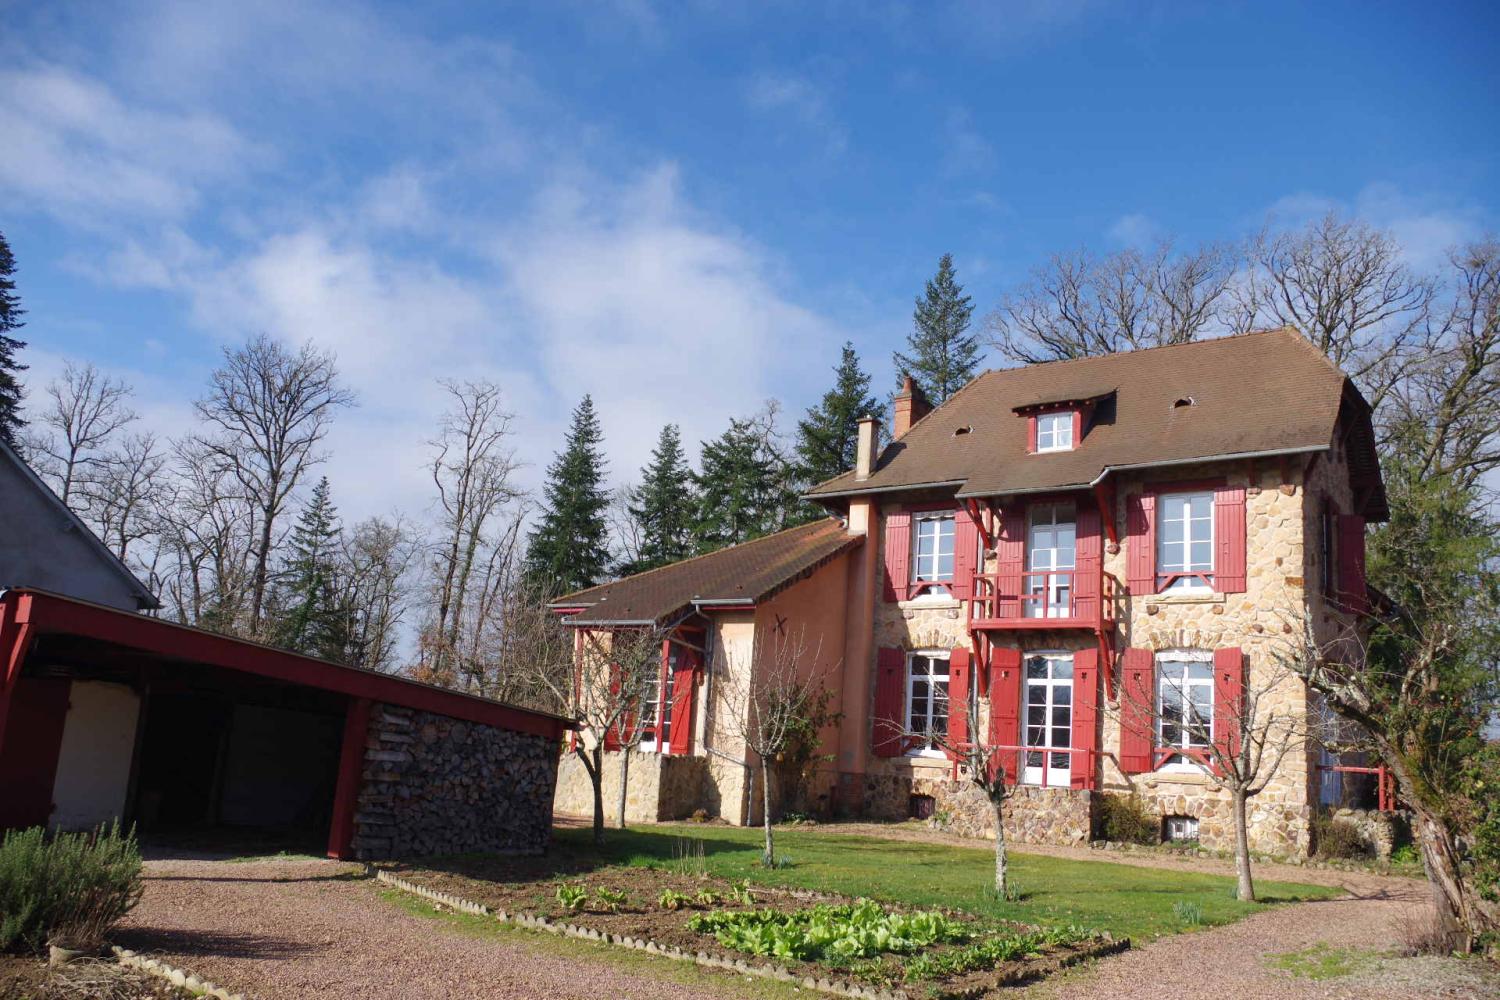  à vendre maison bourgeoise Saint-Honoré-Les-Bains Nièvre 1